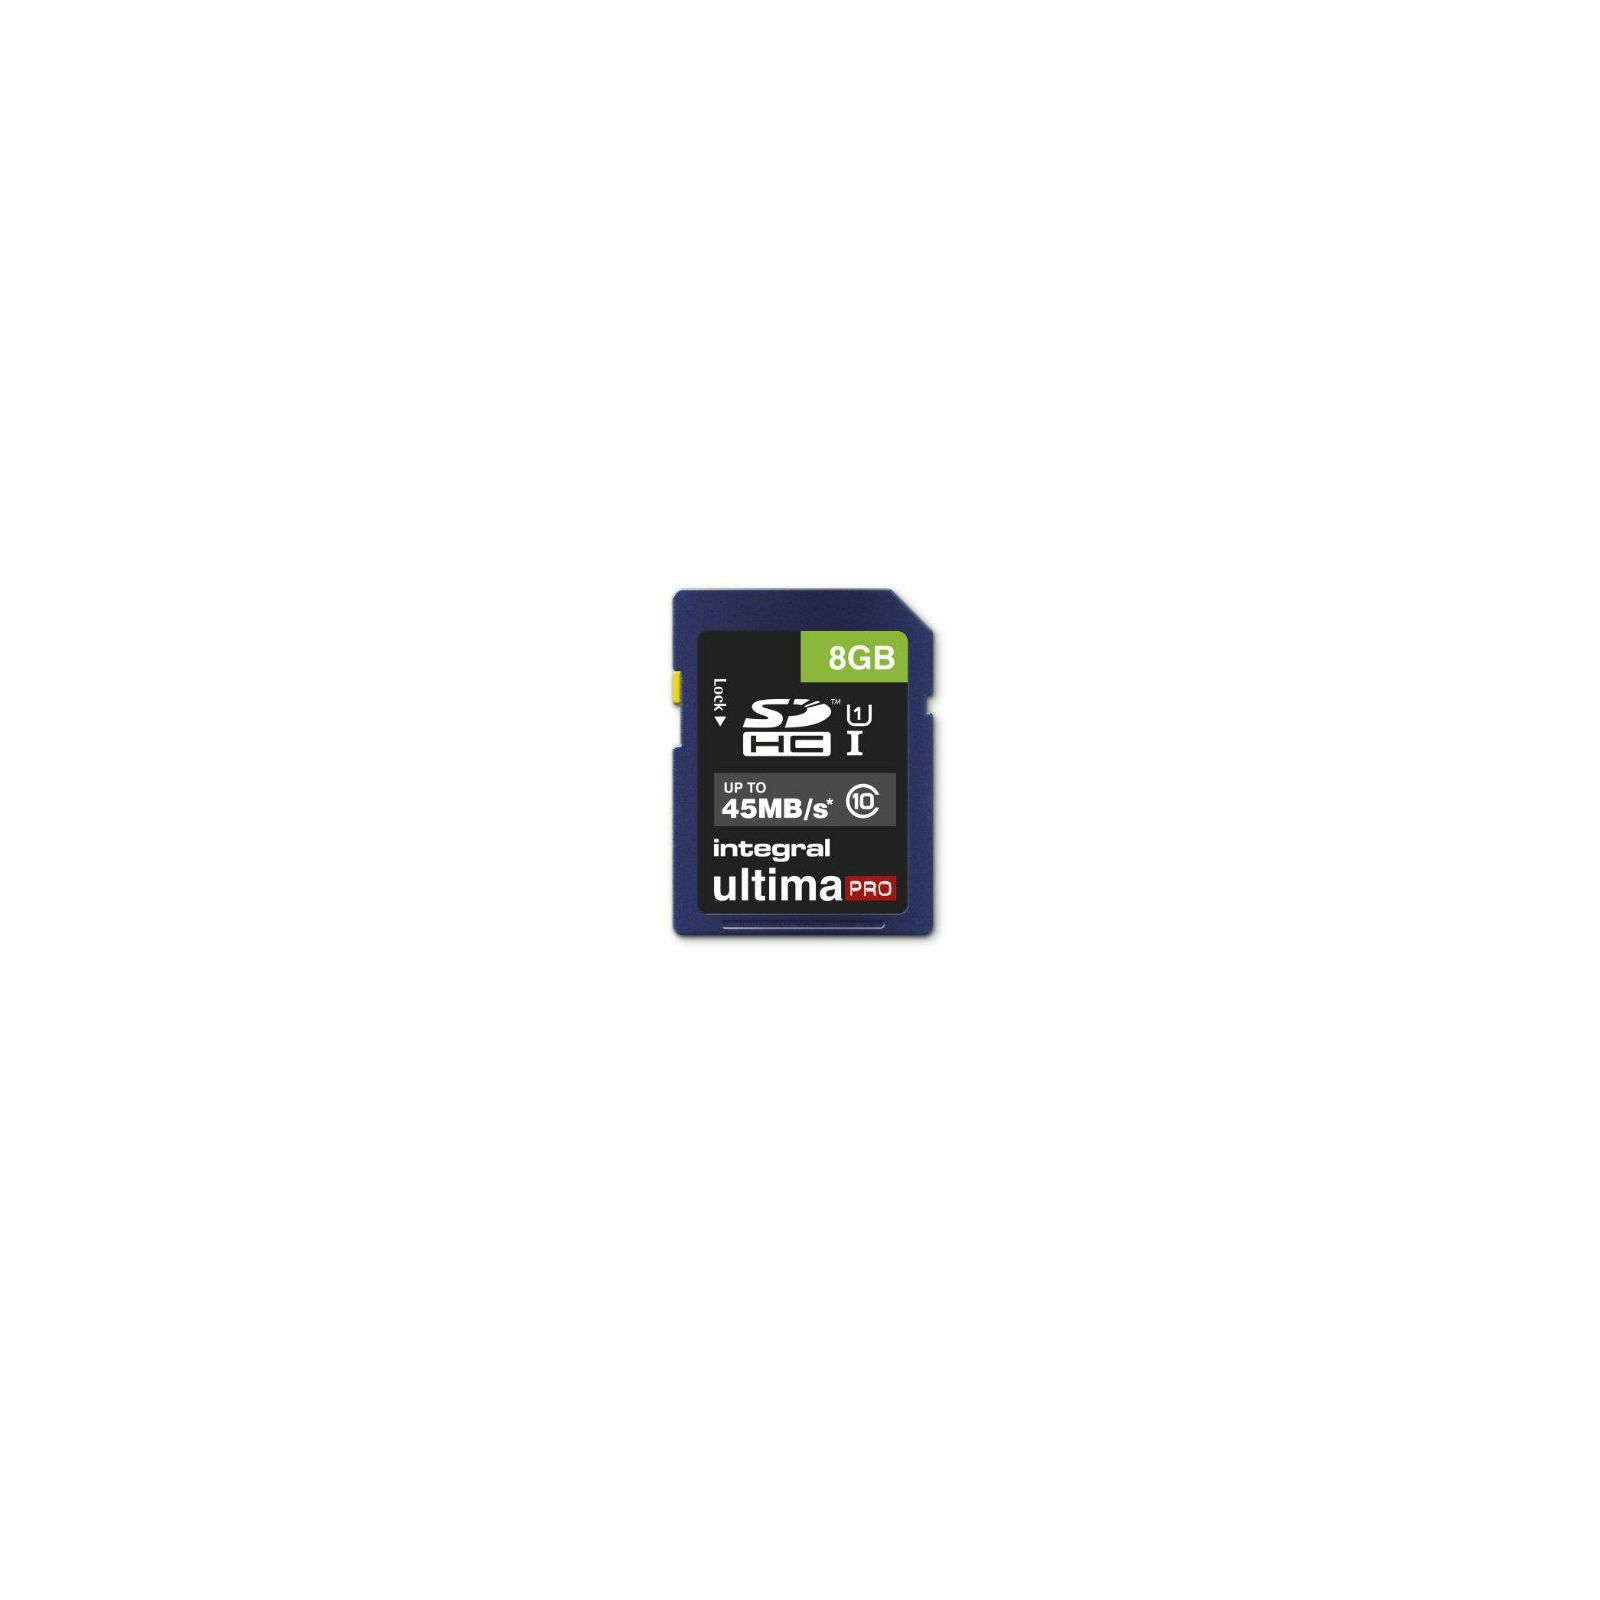 Integral 8GB 45mb/s Ultima PRO SDHC memorijska kartica